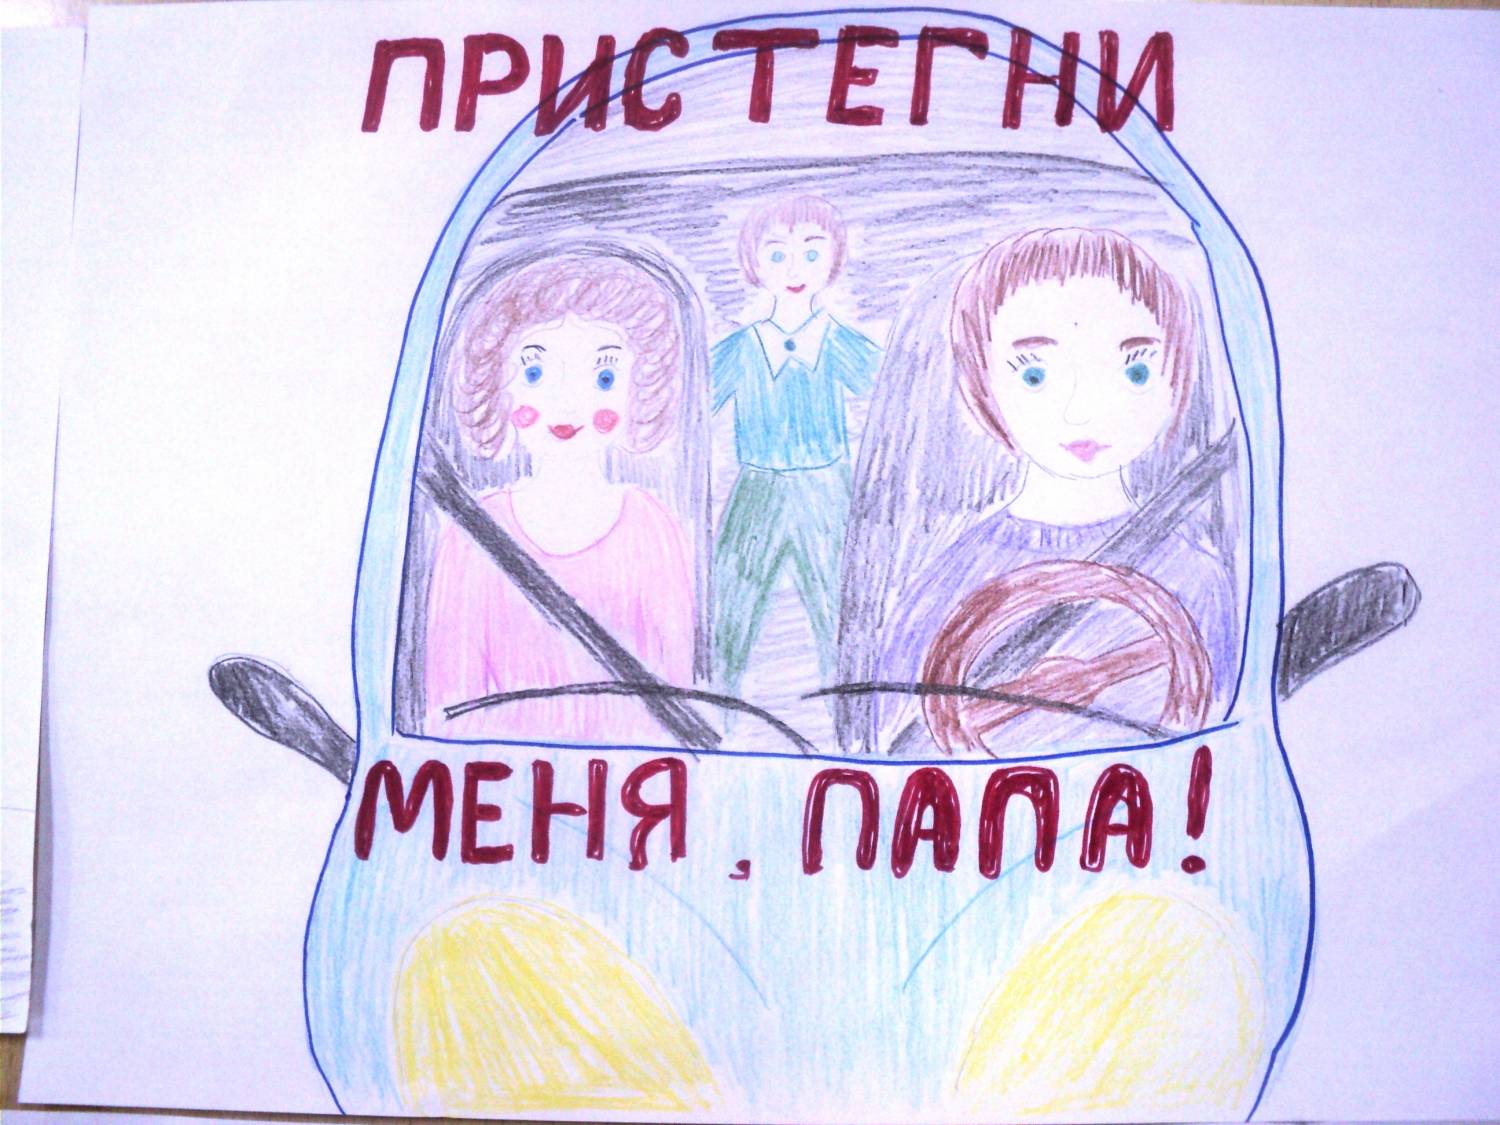 Плакат призывающий к соблюдению правил. Ребёнок главный пассажир рисунок. Плакат призывающий к соблюдению правил безопасности в транспорте. Рисунок на тему ребенок главный пассажир. Плакат кобоюдение правилбезопвсности в траснпопте.